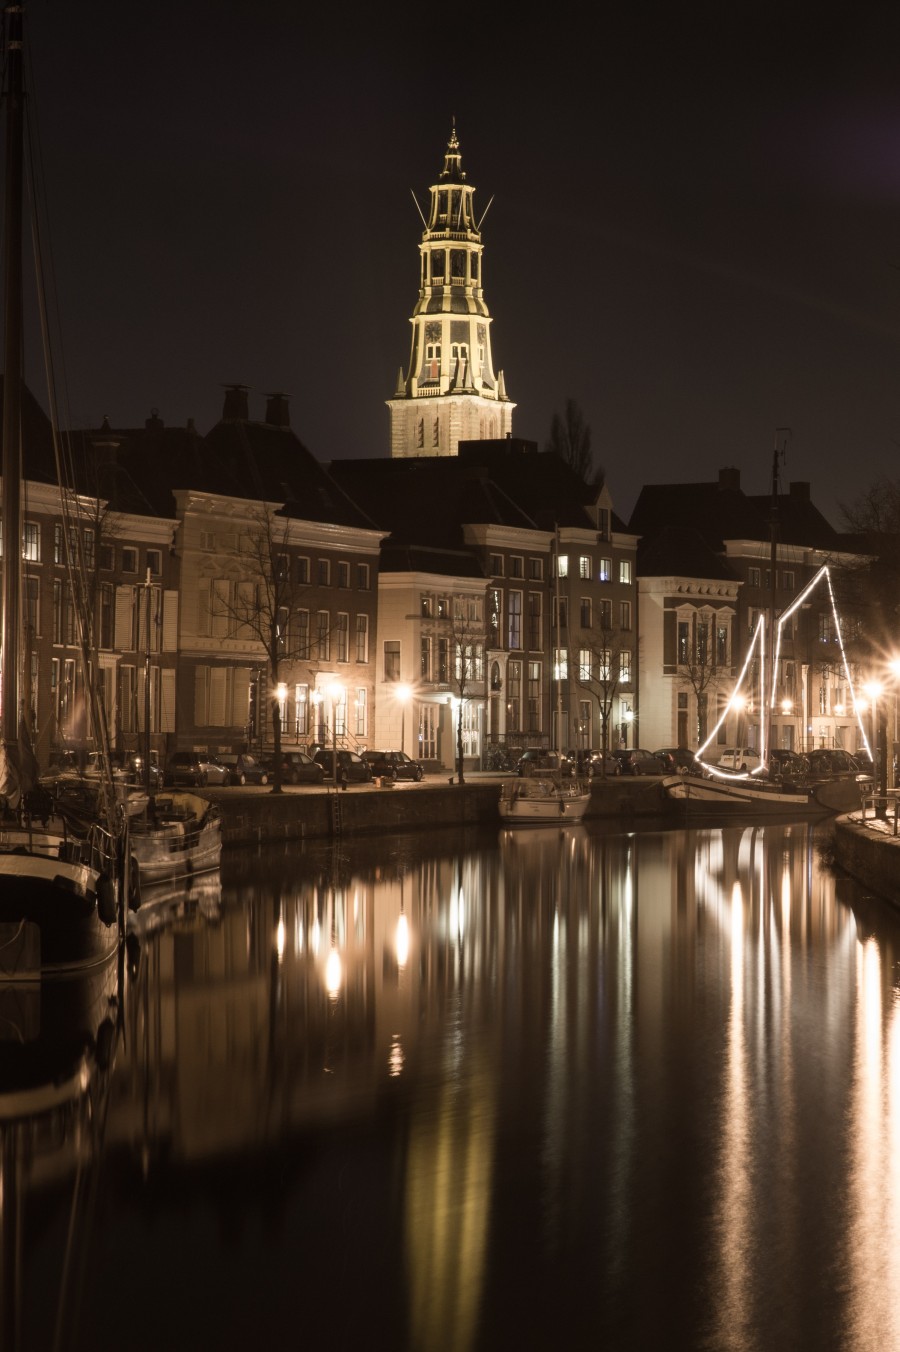 Groningen at night